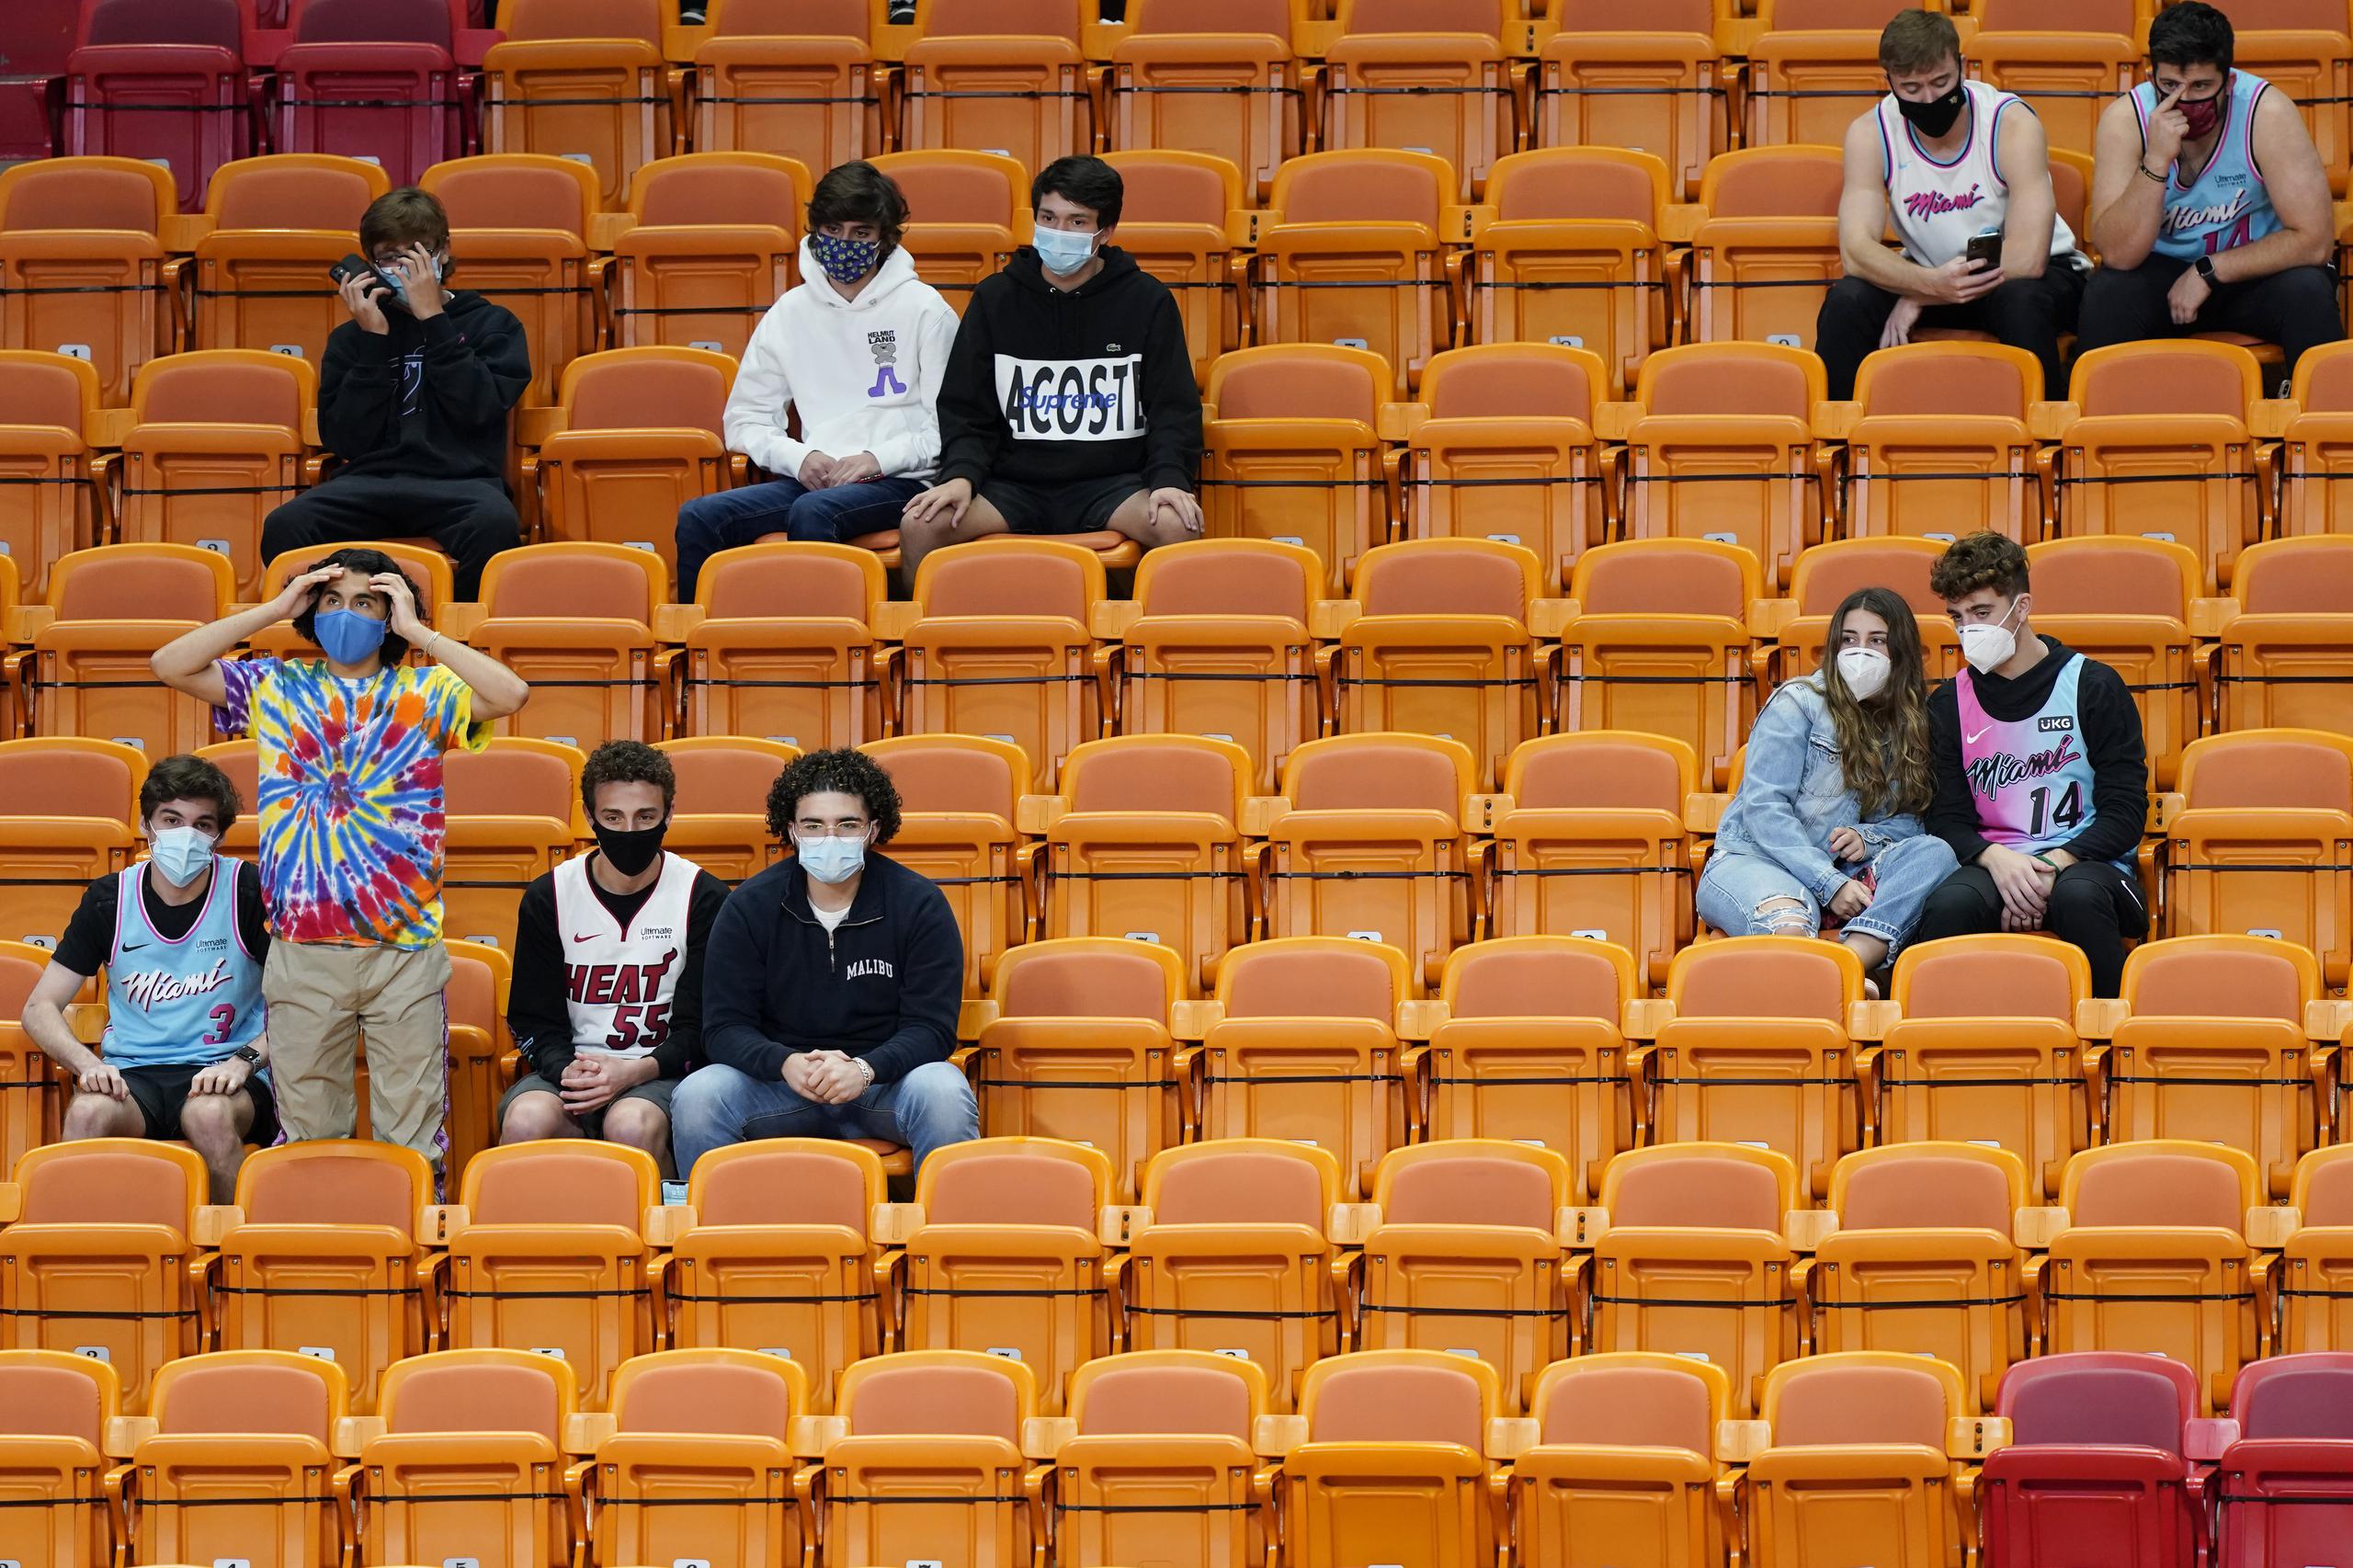 Un grupo de fanáticos observan el encuentro del Heat deMiami y los Clippers de Los Ángeles, el jueves 28 de enero de 2021.